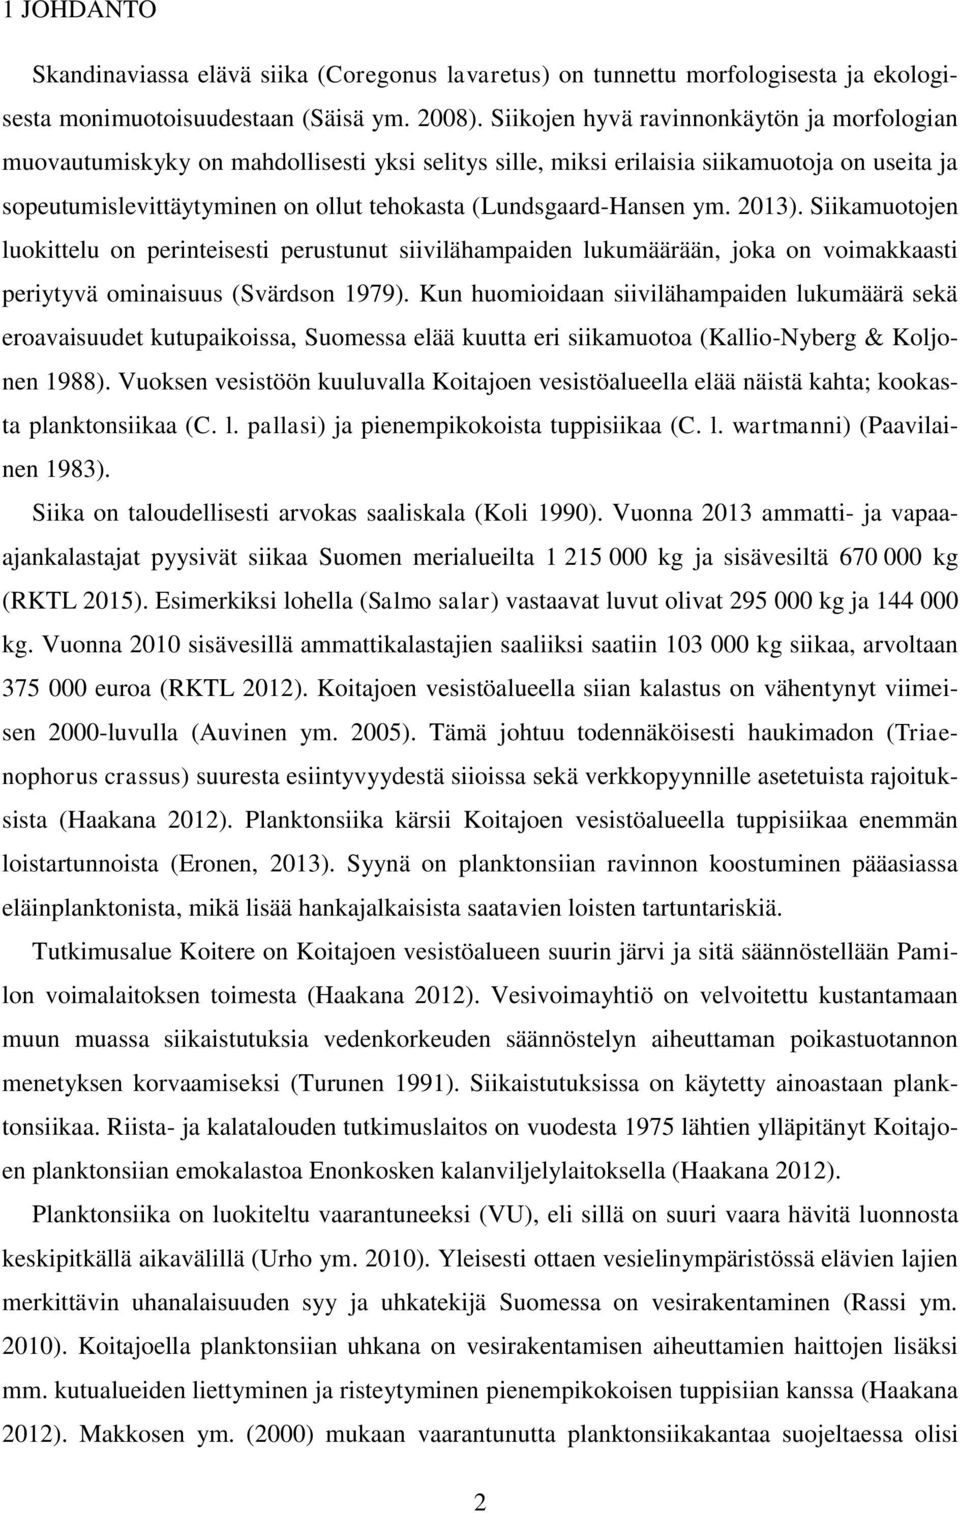 (Lundsgaard-Hansen ym. 2013). Siikamuotojen luokittelu on perinteisesti perustunut siivilähampaiden lukumäärään, joka on voimakkaasti periytyvä ominaisuus (Svärdson 1979).